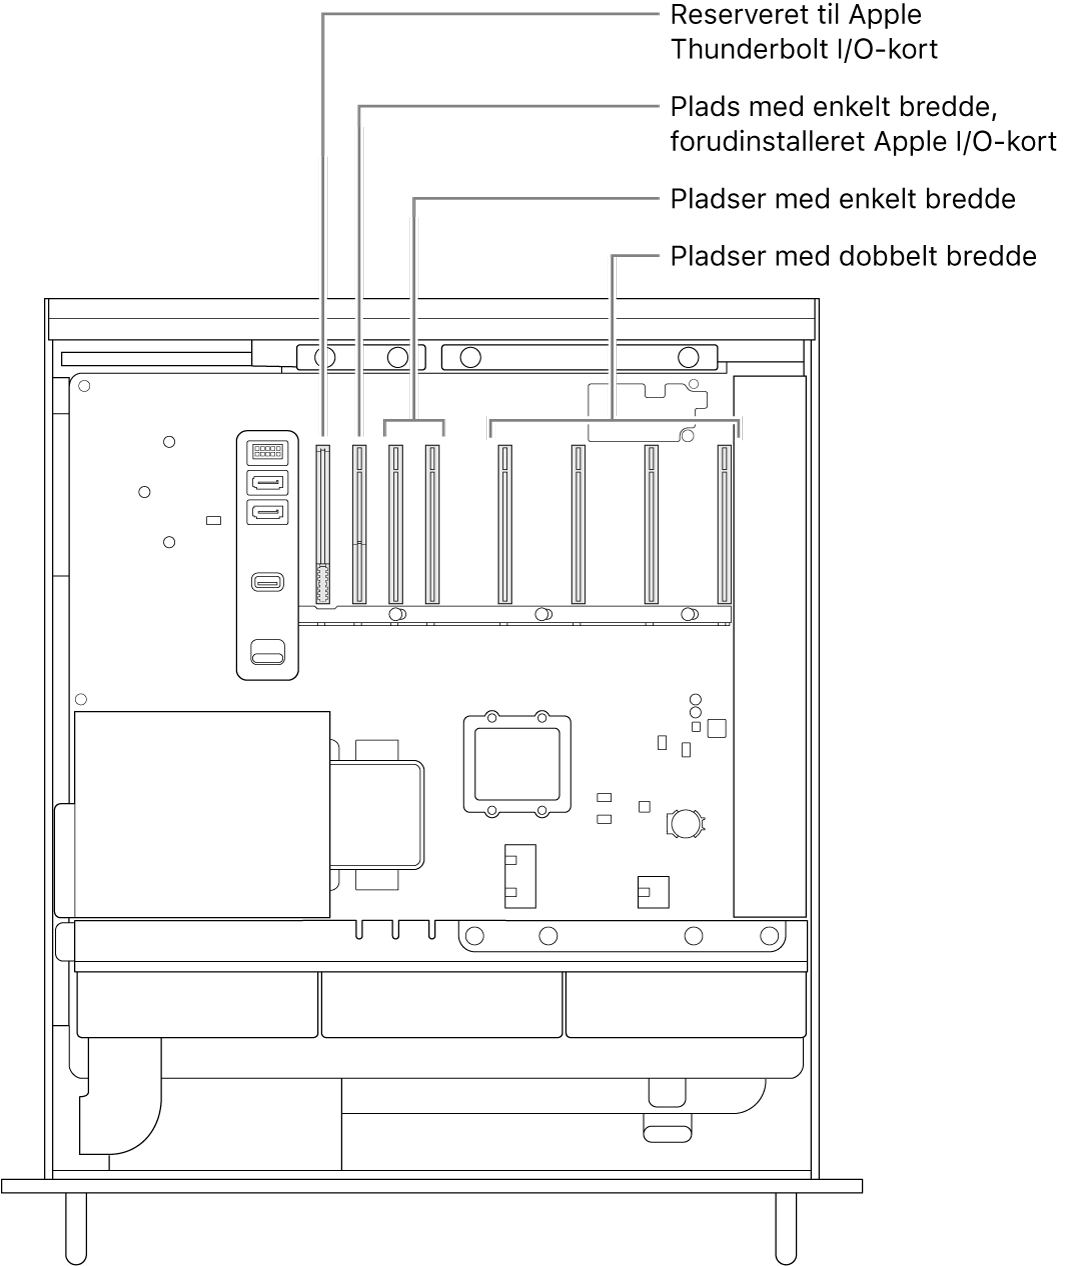 Siden på Mac Pro er åben med billedforklaringer til placeringen af pladsen til Thunderbolt I/O-kortet, pladsen i enkelt bredde til Apple I/O-kortet, de to pladser i enkelt bredde og de fire pladser i dobbelt bredde.